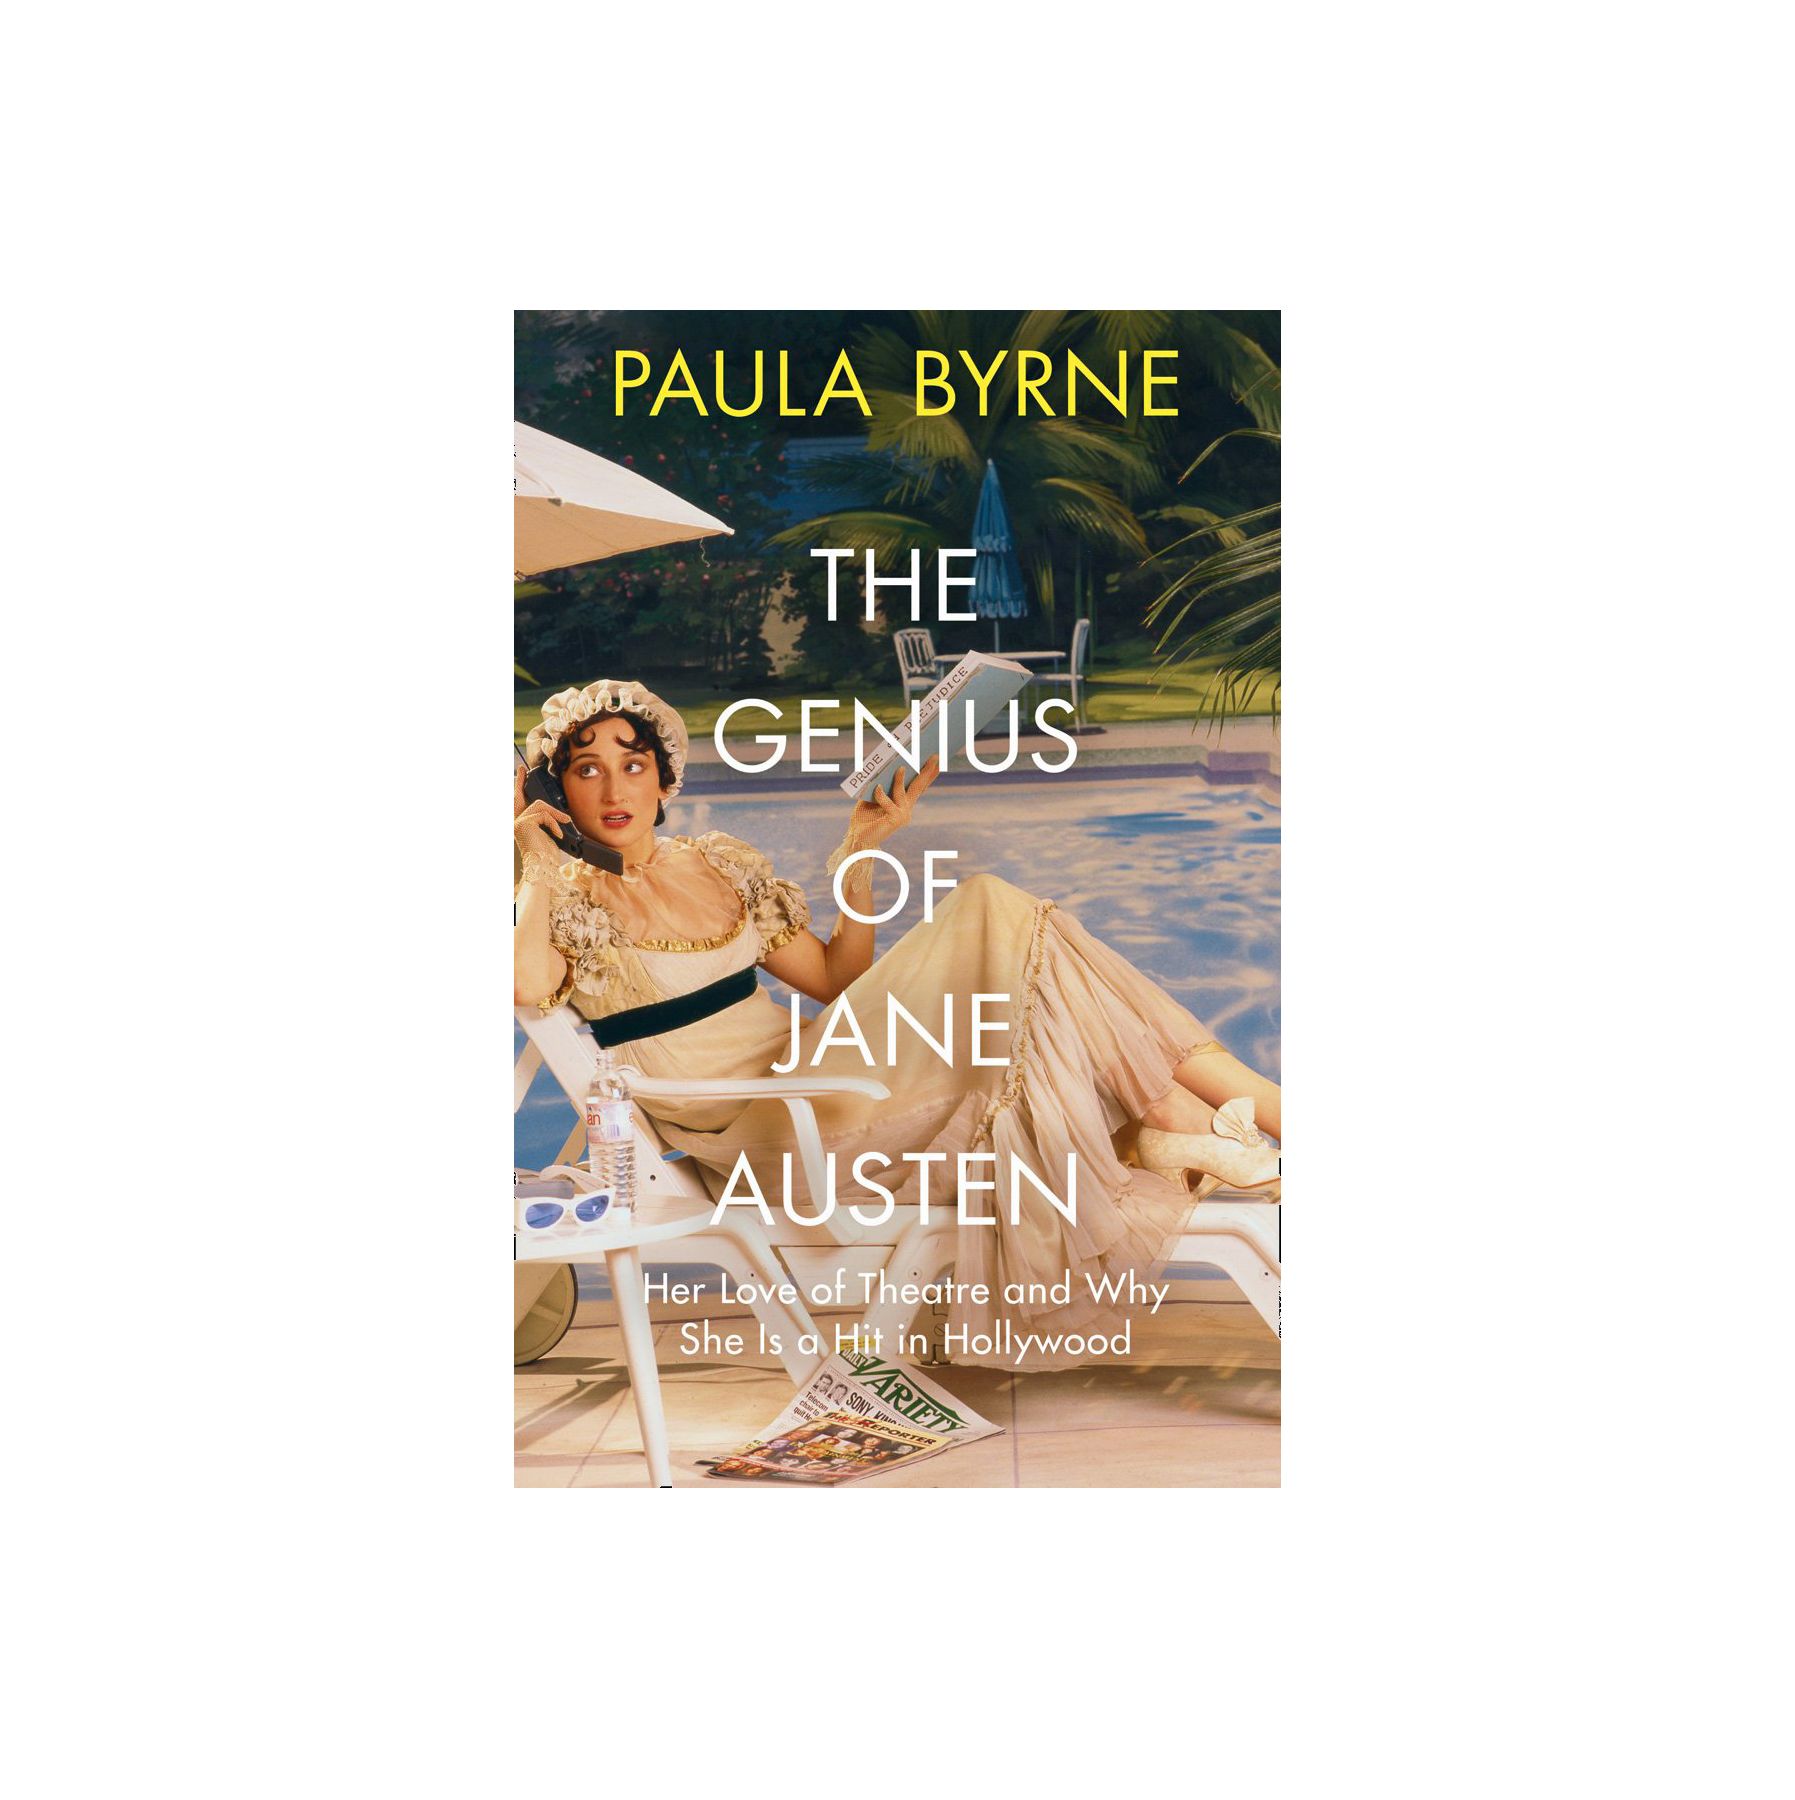 อัจฉริยะของเจน ออสเตน: ความรักในโรงละครและเหตุผลที่เธอทำงานในฮอลลีวูด โดย Paula Byrne